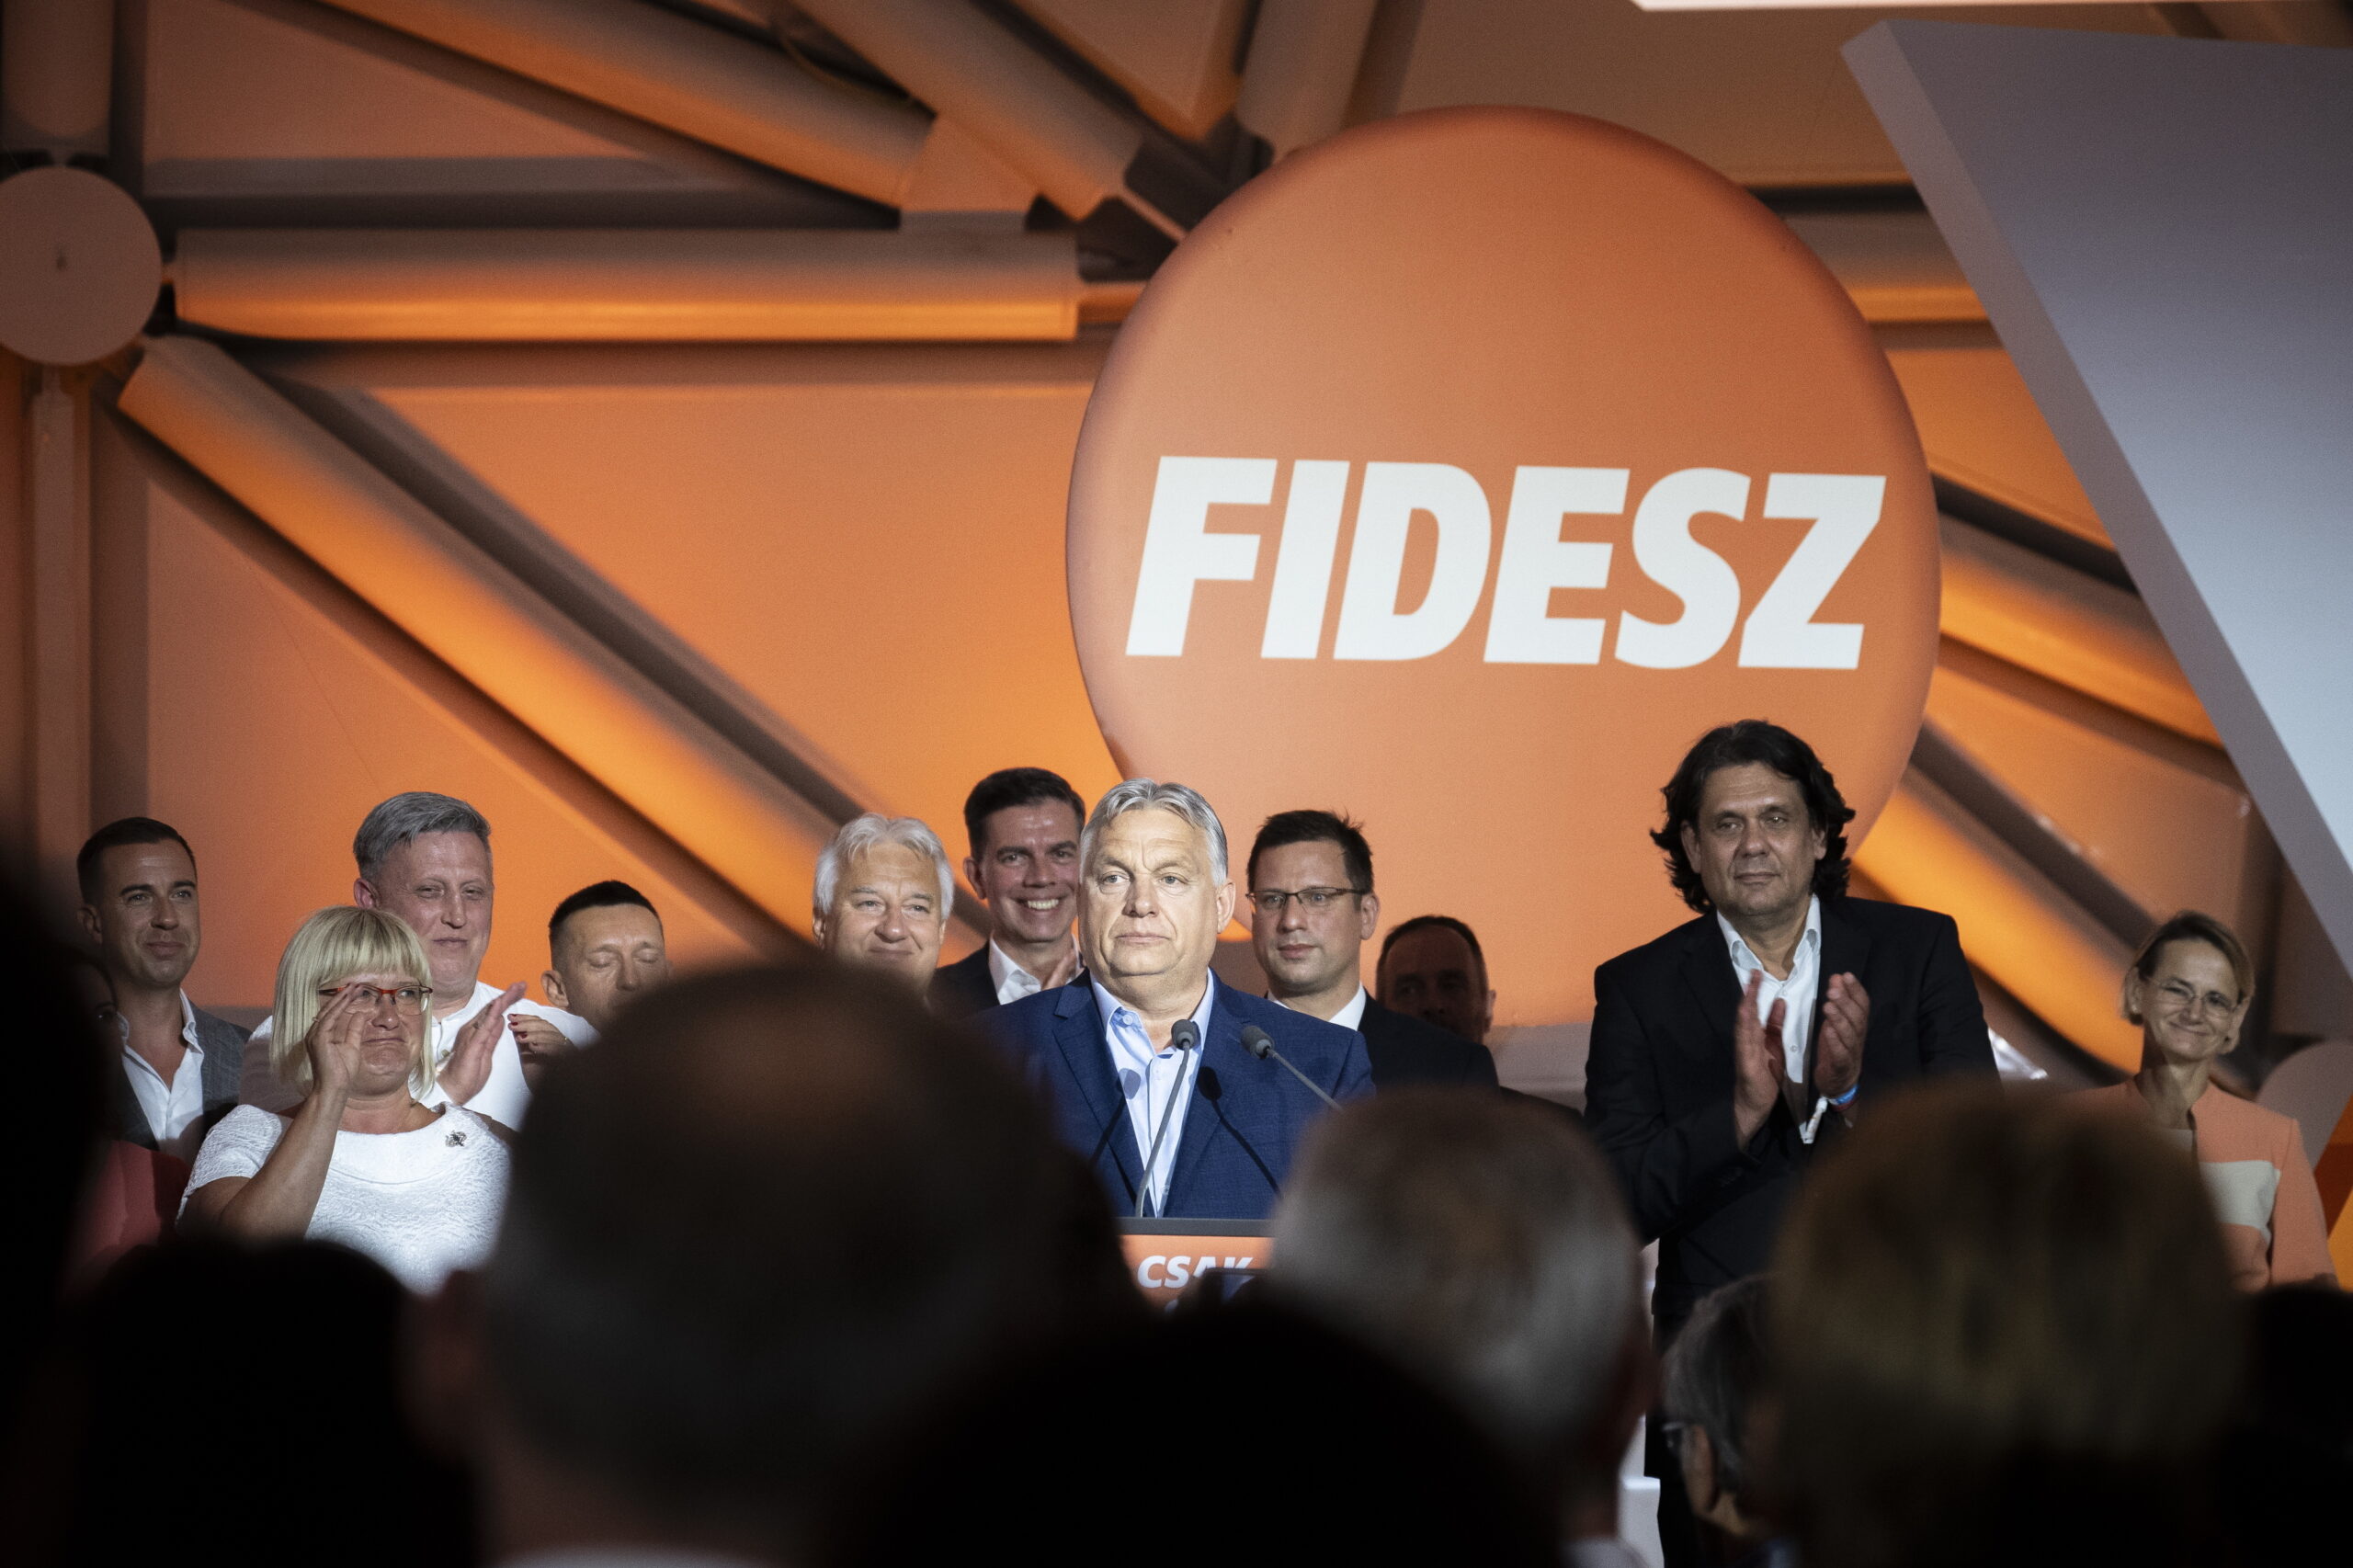 Stefano Bottoni: Ugyanaz történik majd a Fidesszel is, mint az MSZP-vel, lassan elfogynak a támogatók